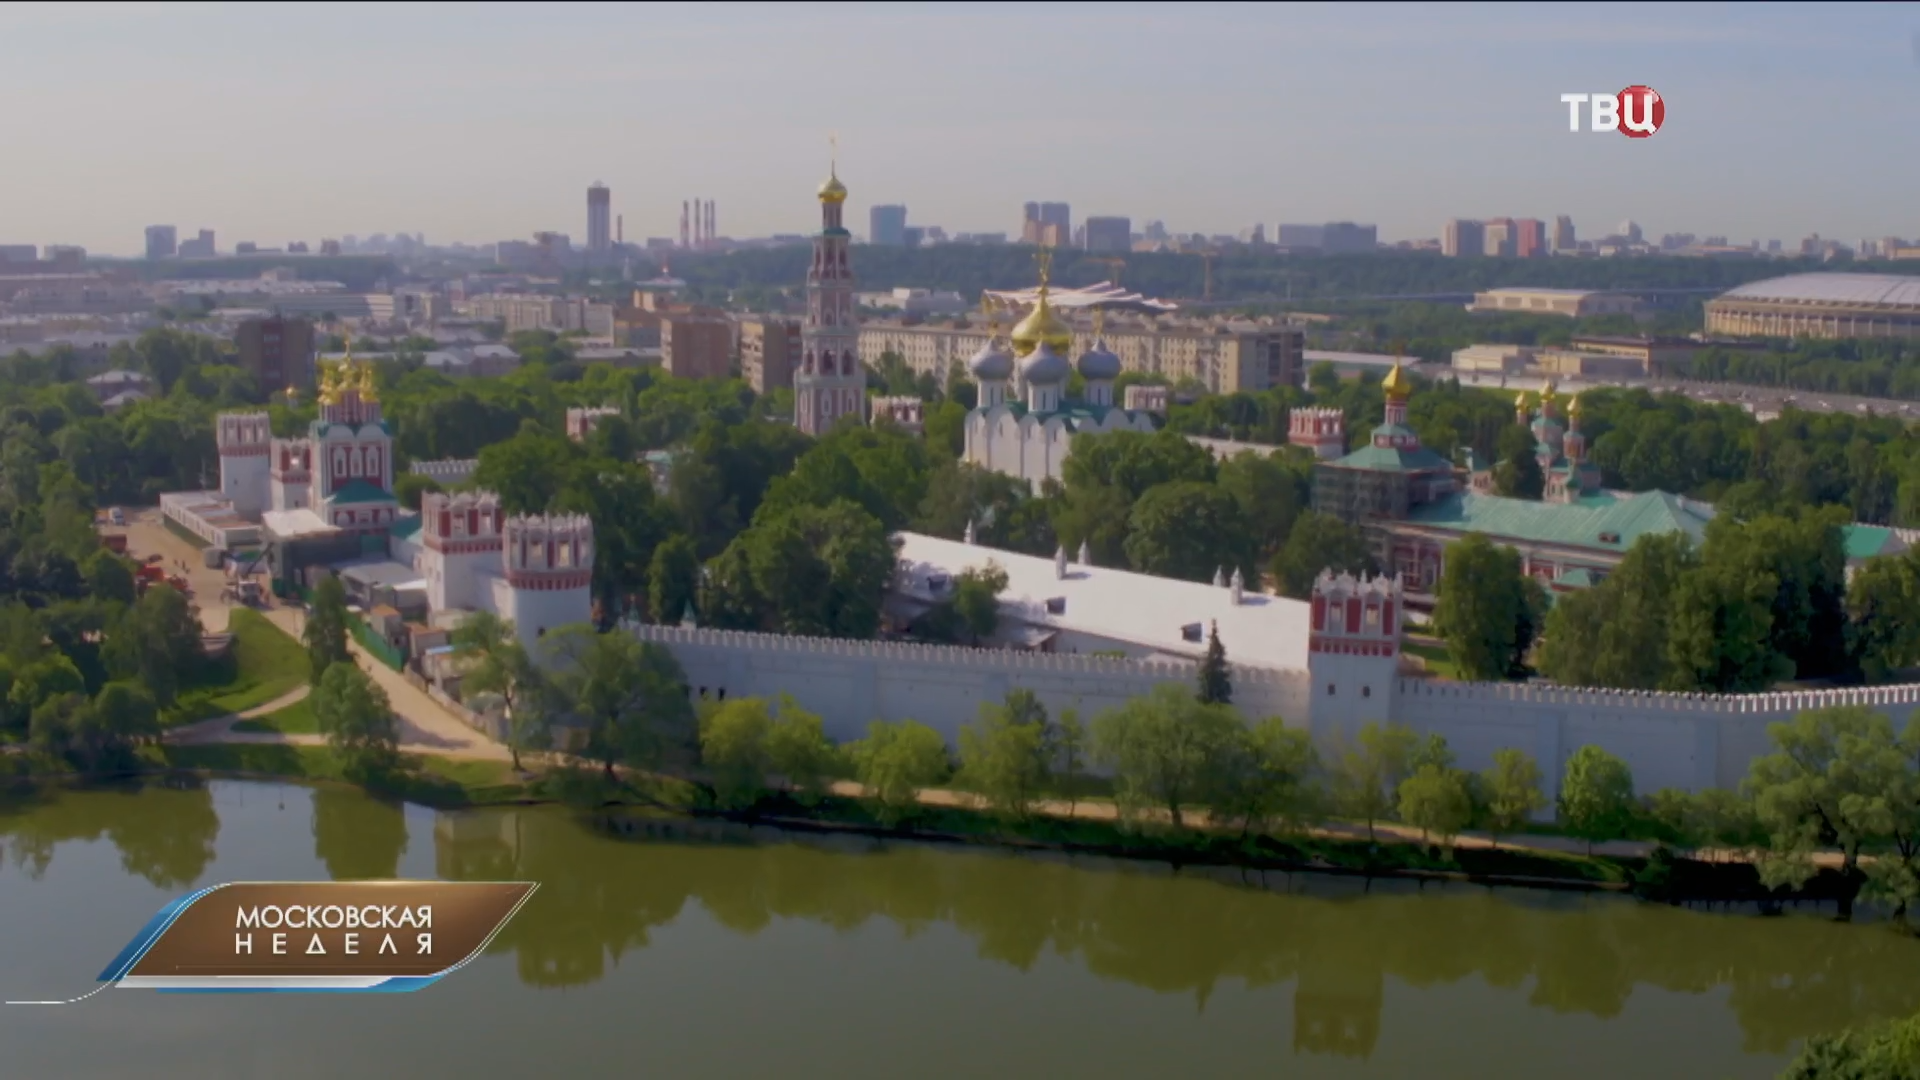 Новодевичий монастырь отмечает 500-летие / Московская неделя на ТВЦ